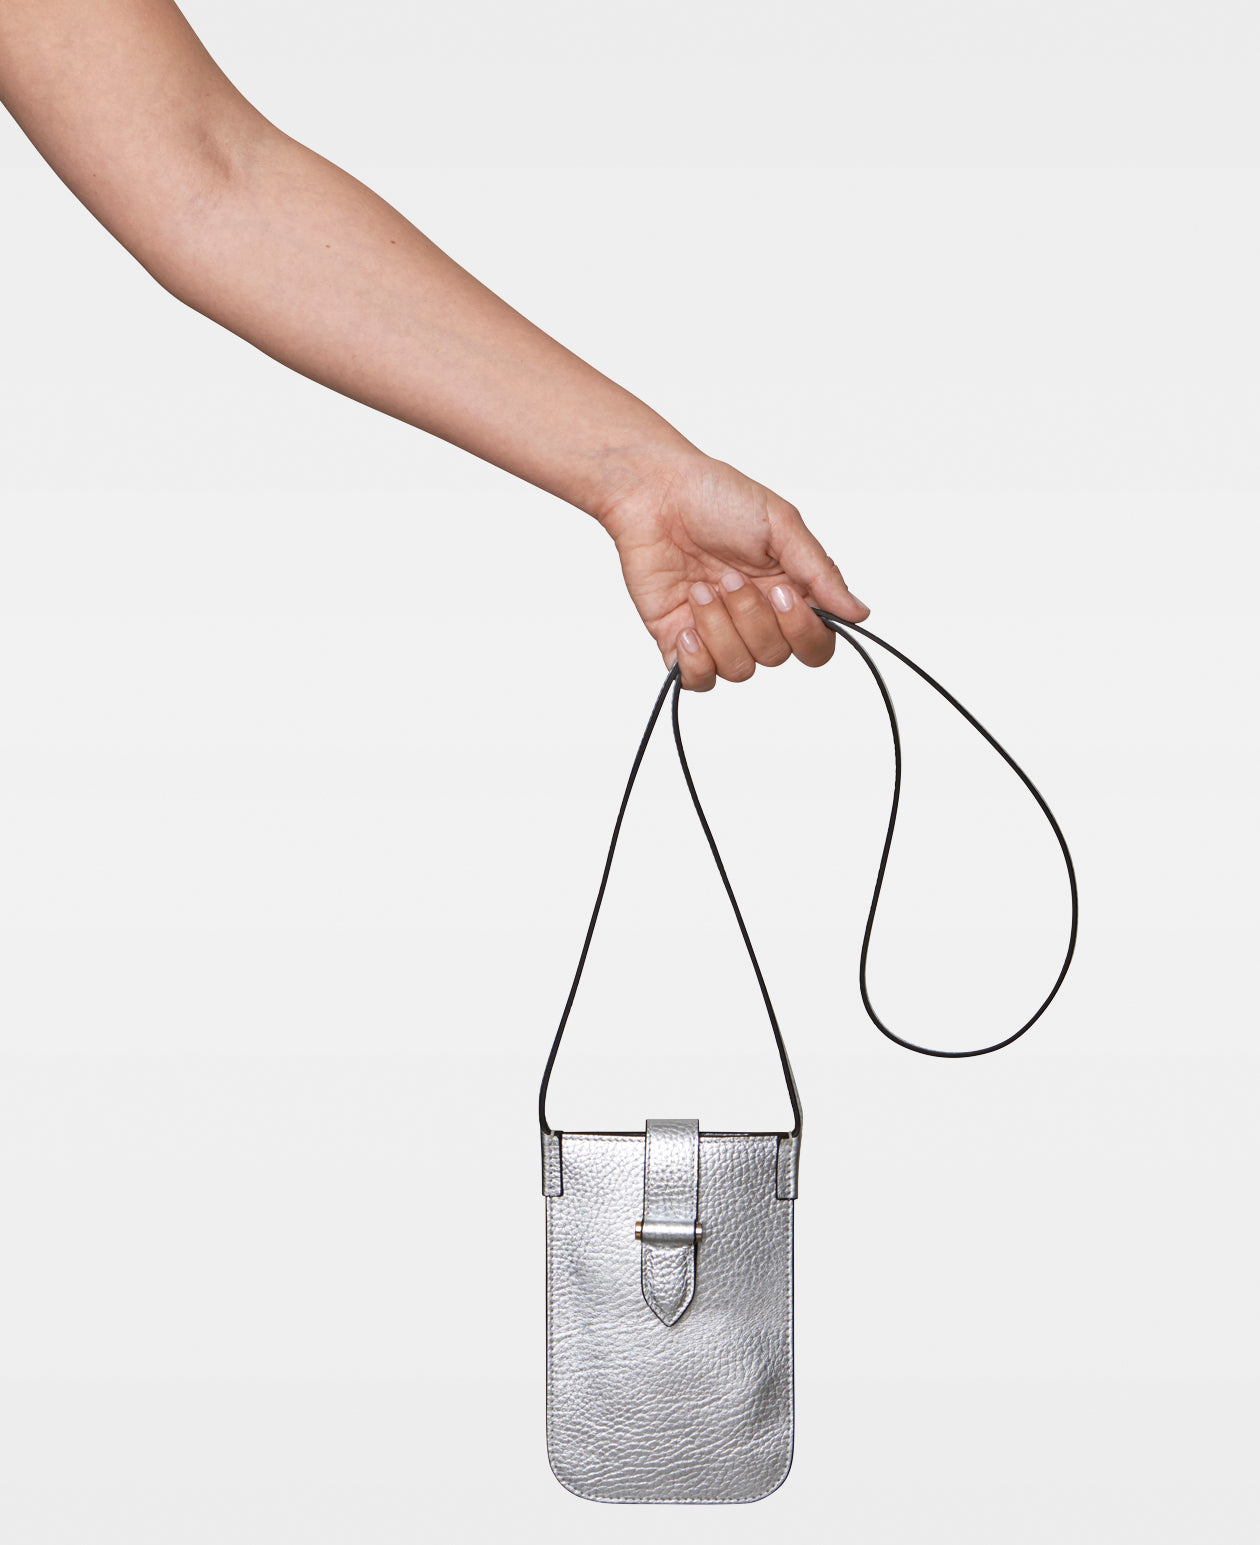 Mini Silver Bag